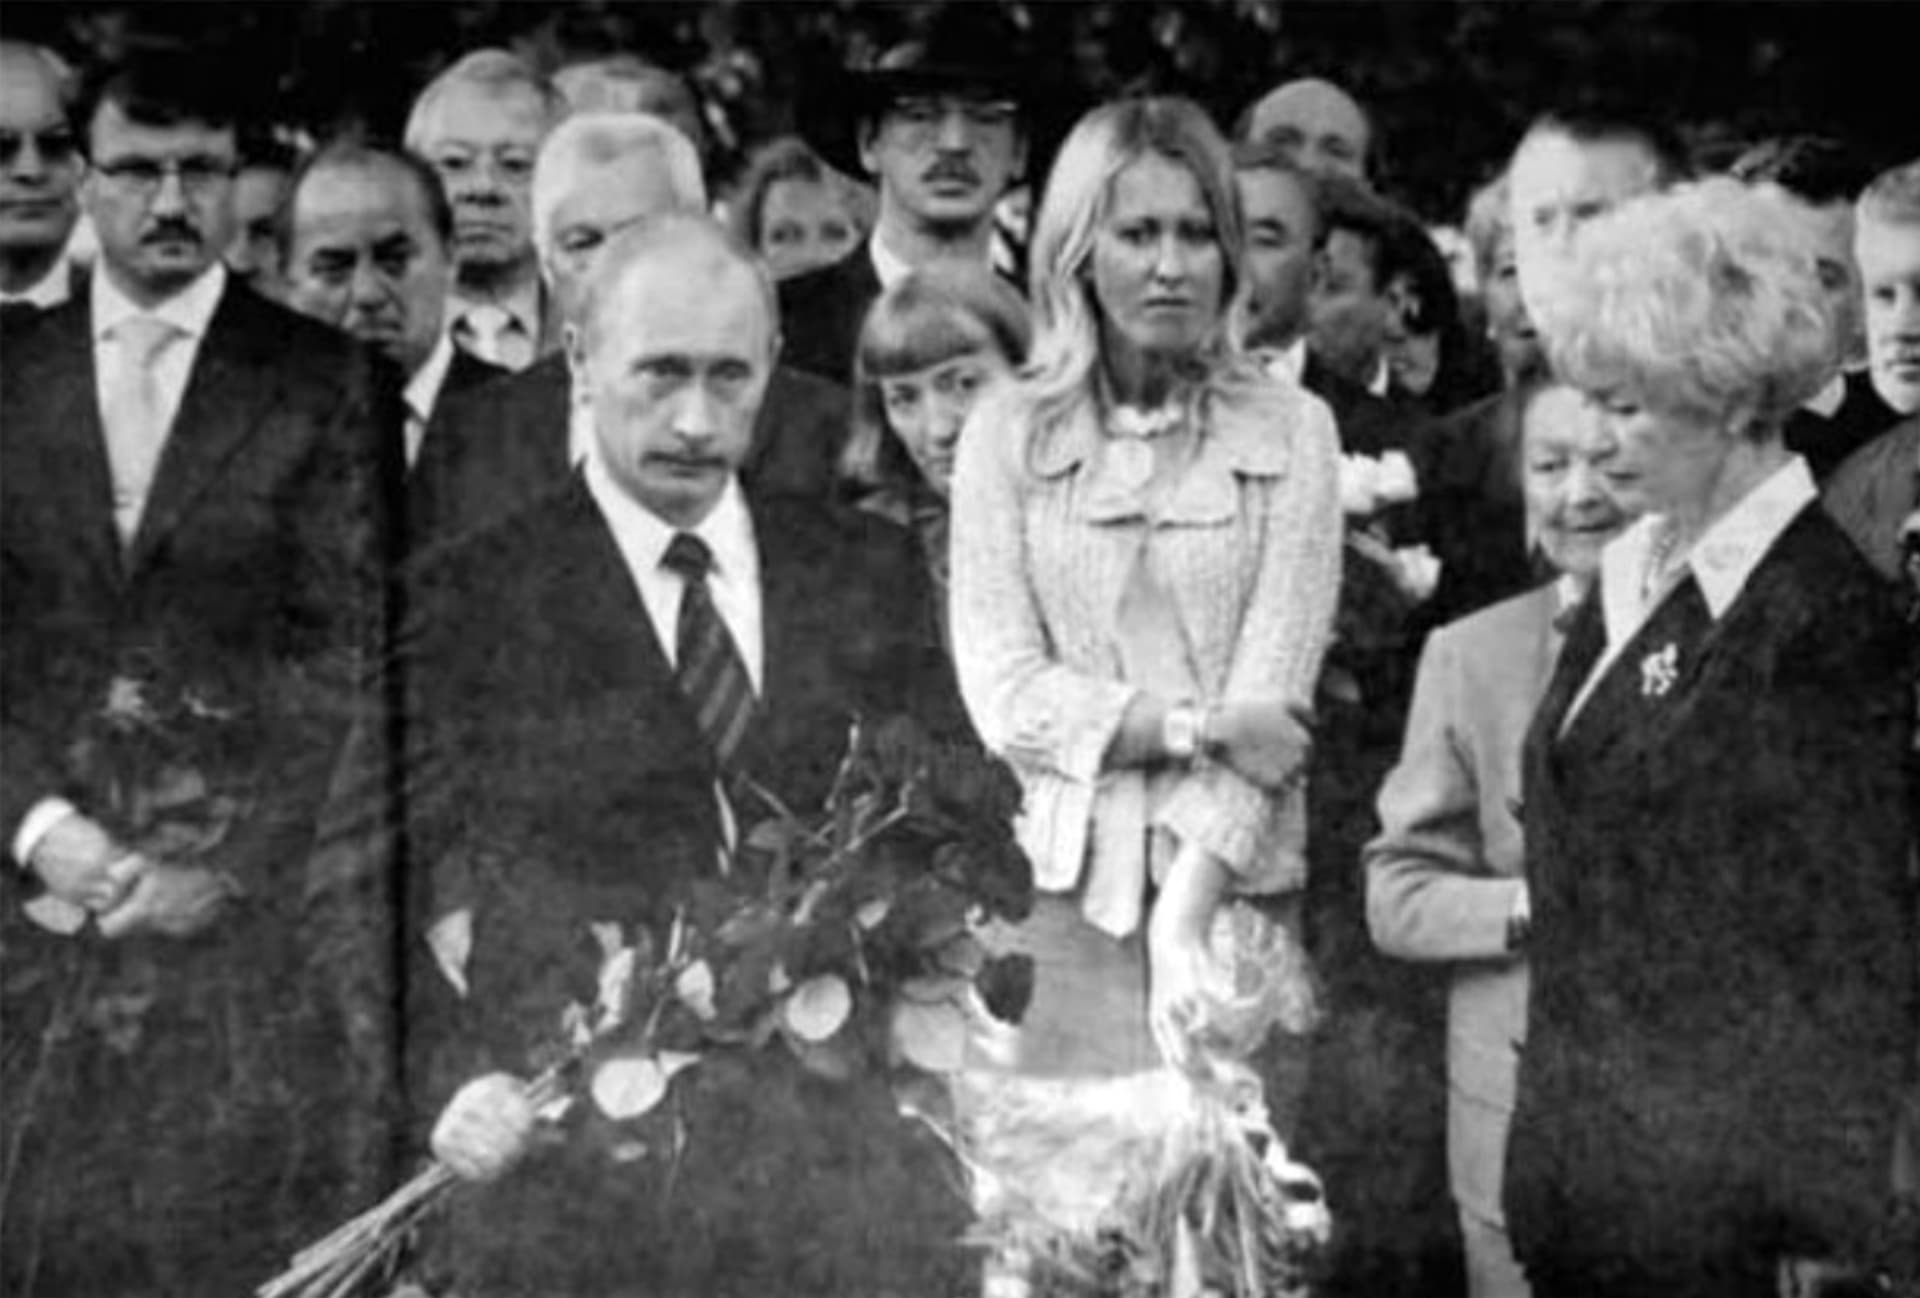 Xenija Sobčaková s Vladimirem Putinem